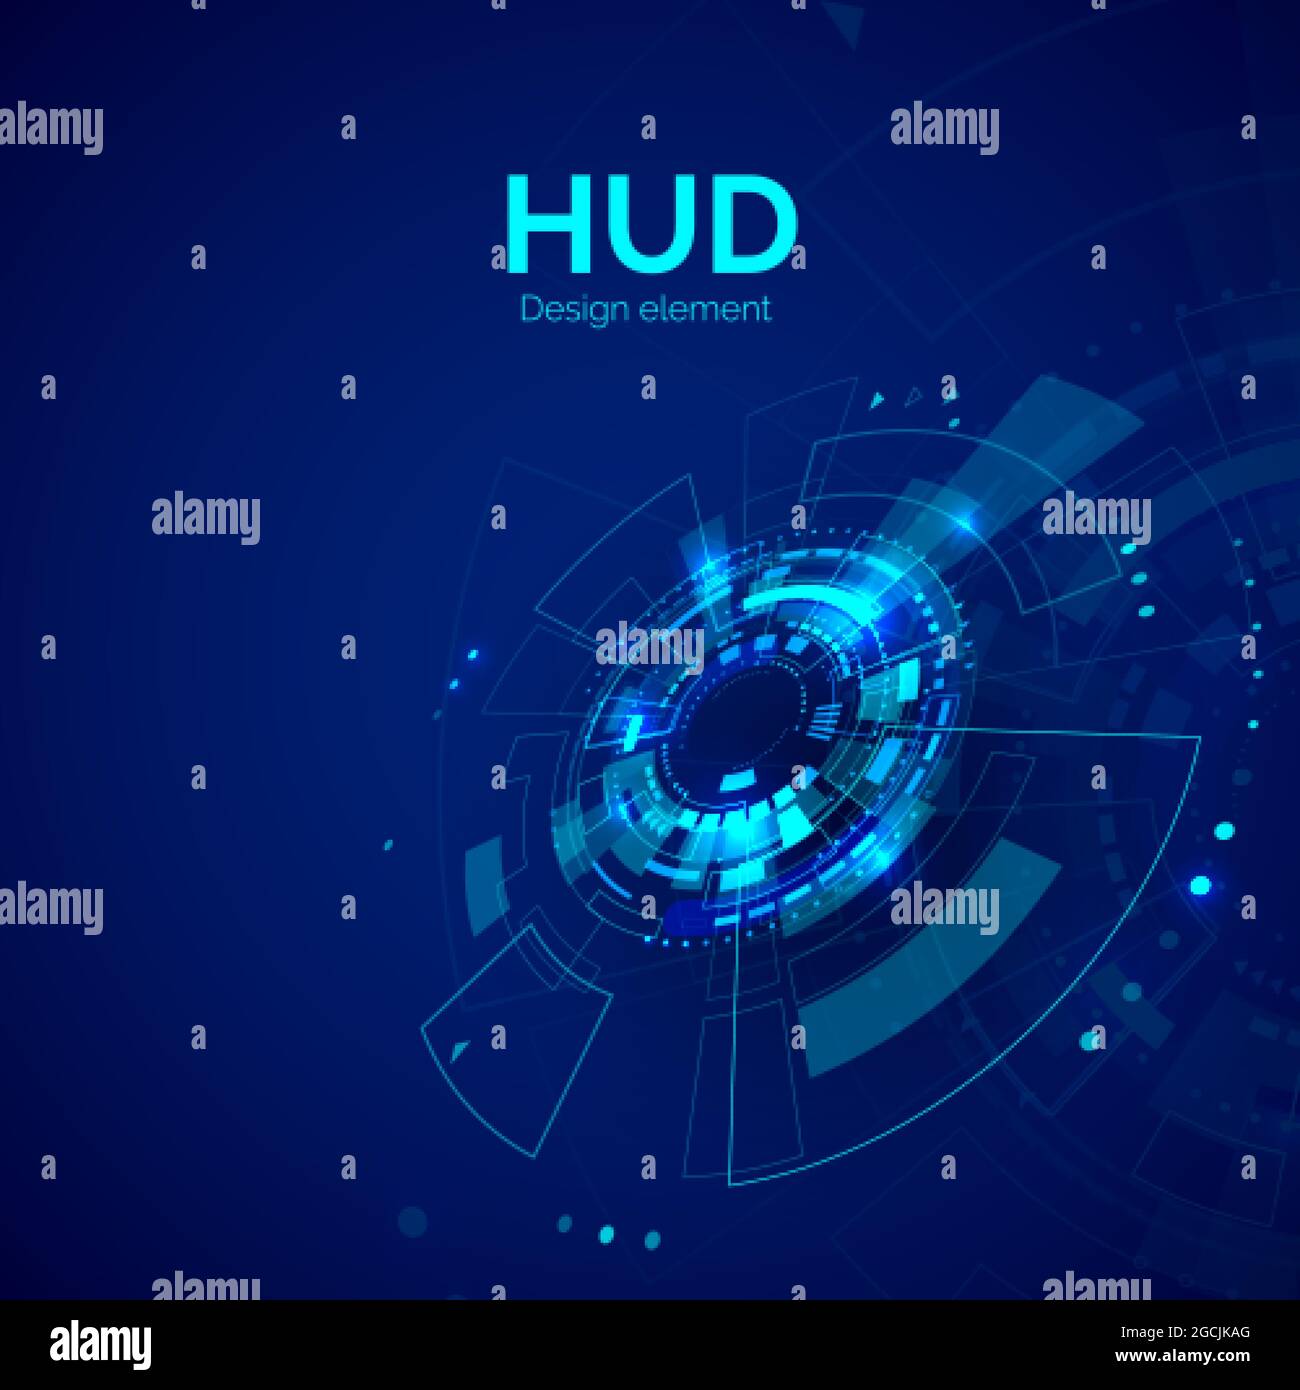 HUD-Designelement. Head-up-Display futuristische Digitaltechnologie. Sci Fi- oder Cyberspace-Visualisierung. Vektorgrafik Stock Vektor